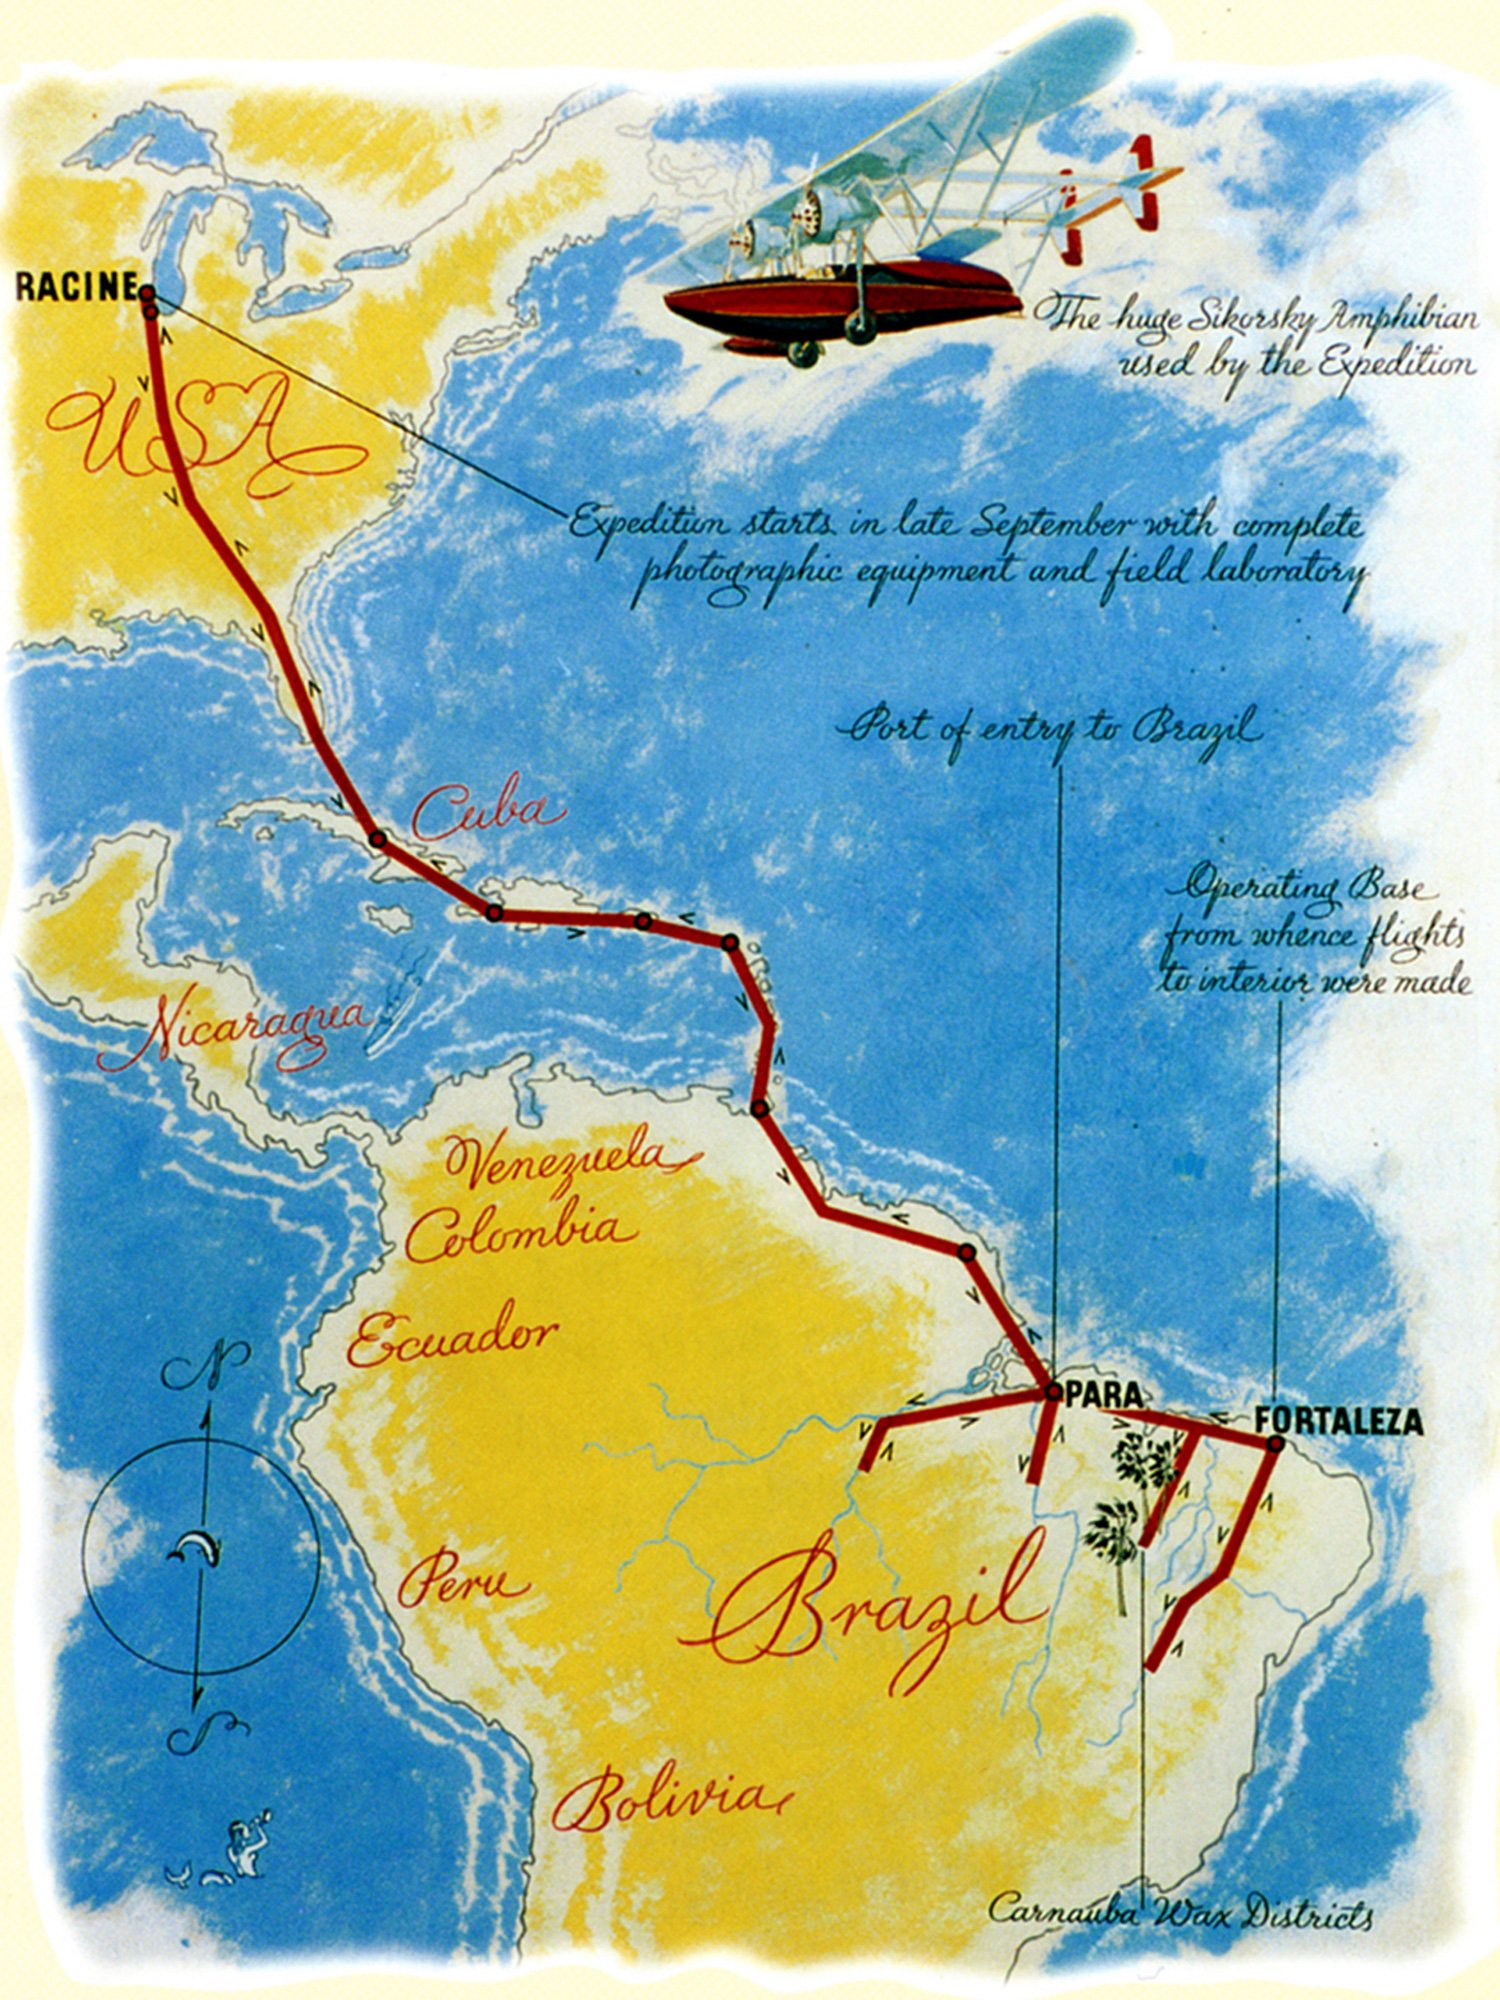 H F ジョンソン ジュニアが行なったcarnauba機での探検は 人生を変えるような冒険でした